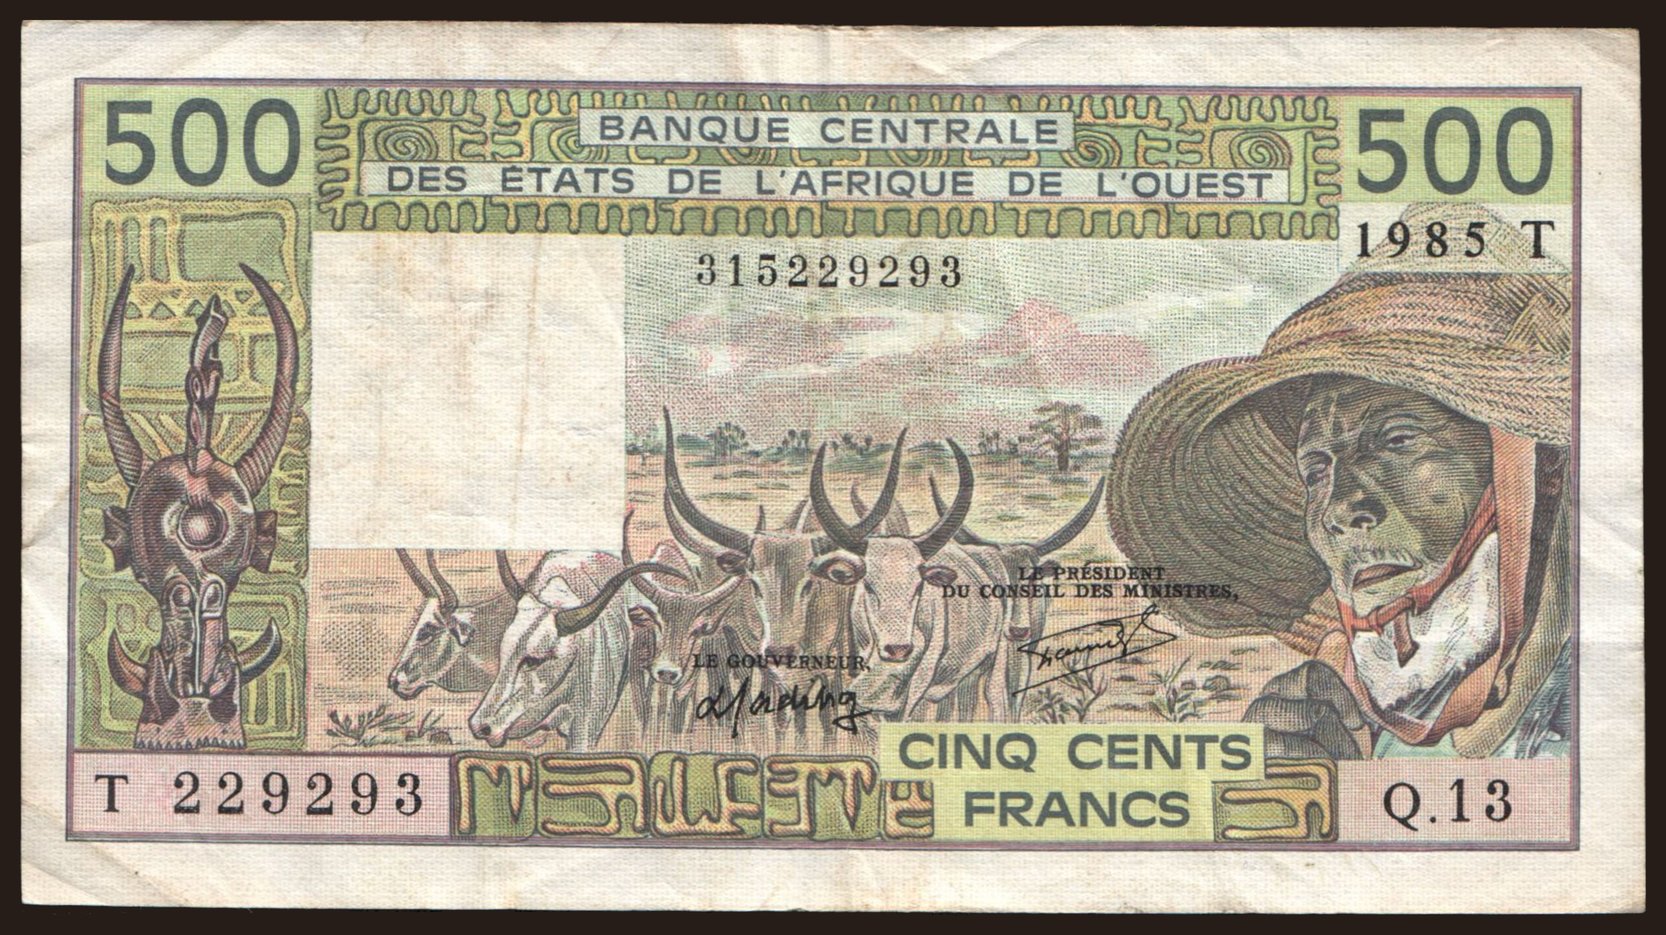 Togo, 500 francs, 1985